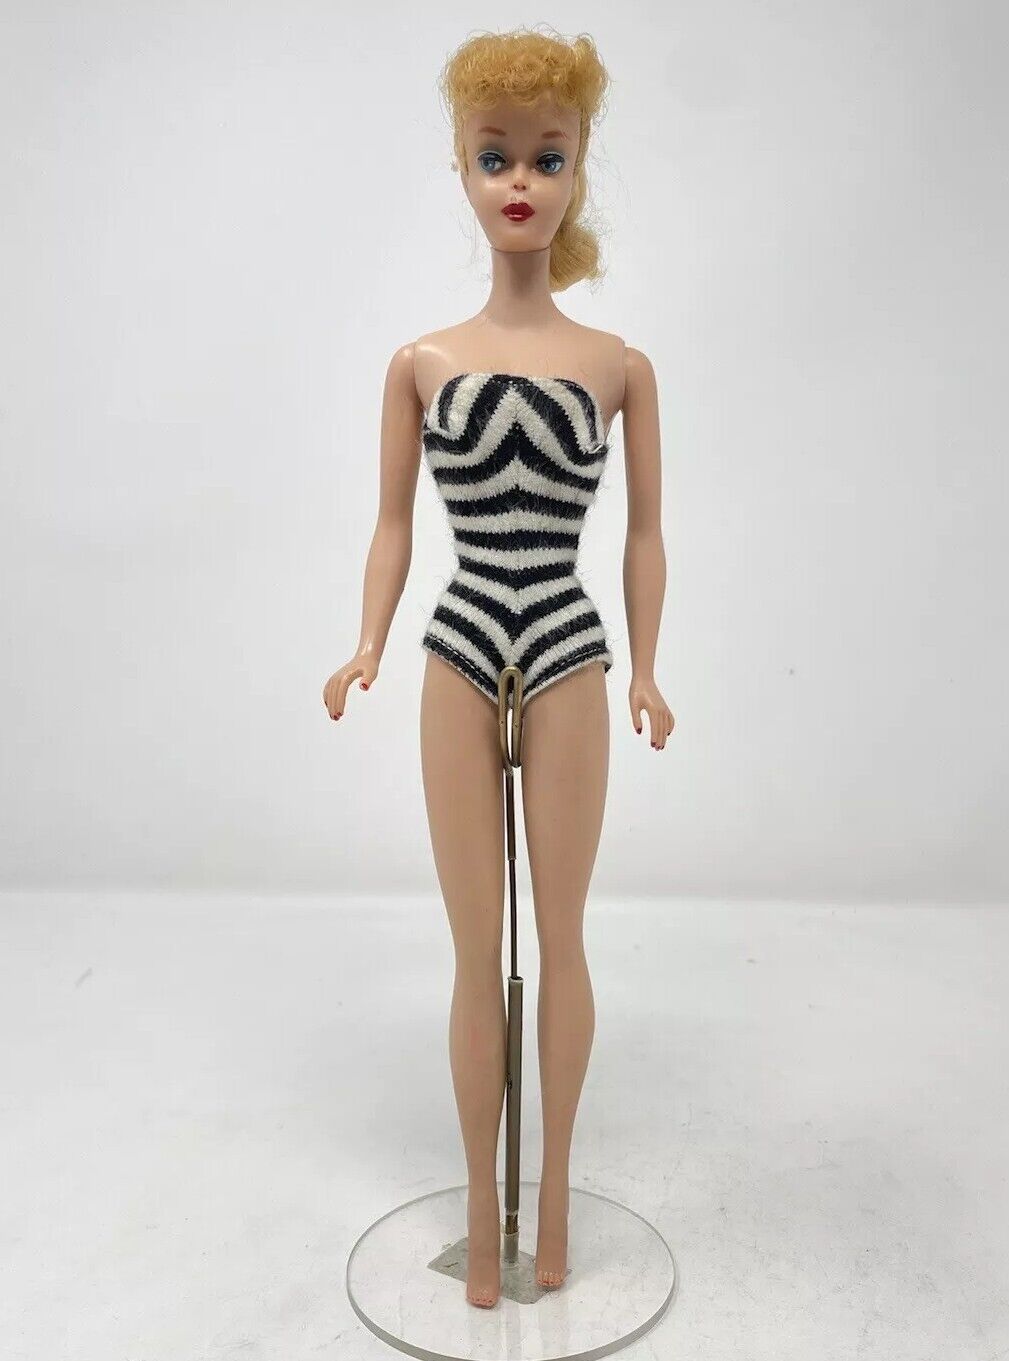 Vintage 1961 #5 Blonde Barbie Original Ponytail #850 (Read Description)  